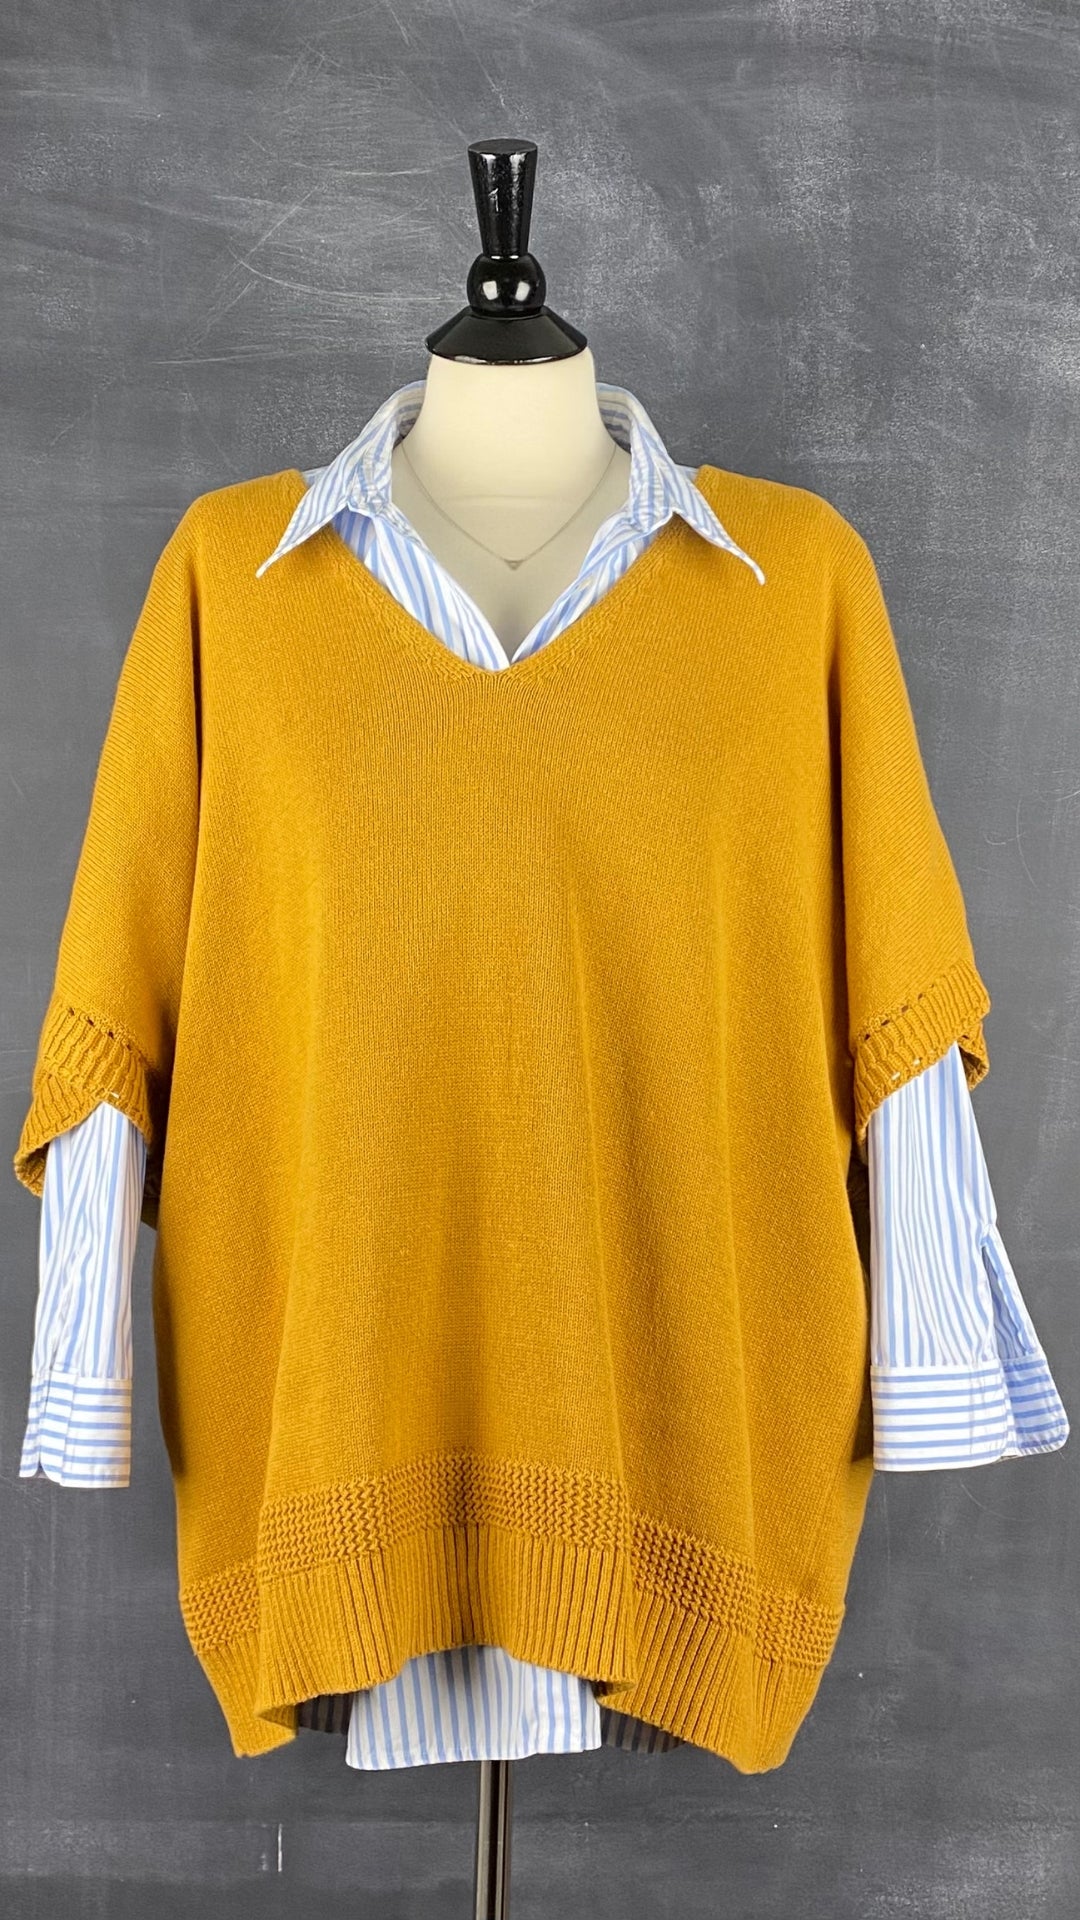 Chandail tricot manche cape ocre Joie, taille 3X. Vue de l'agencement avec le chemisier à rayures Ralph Lauren.